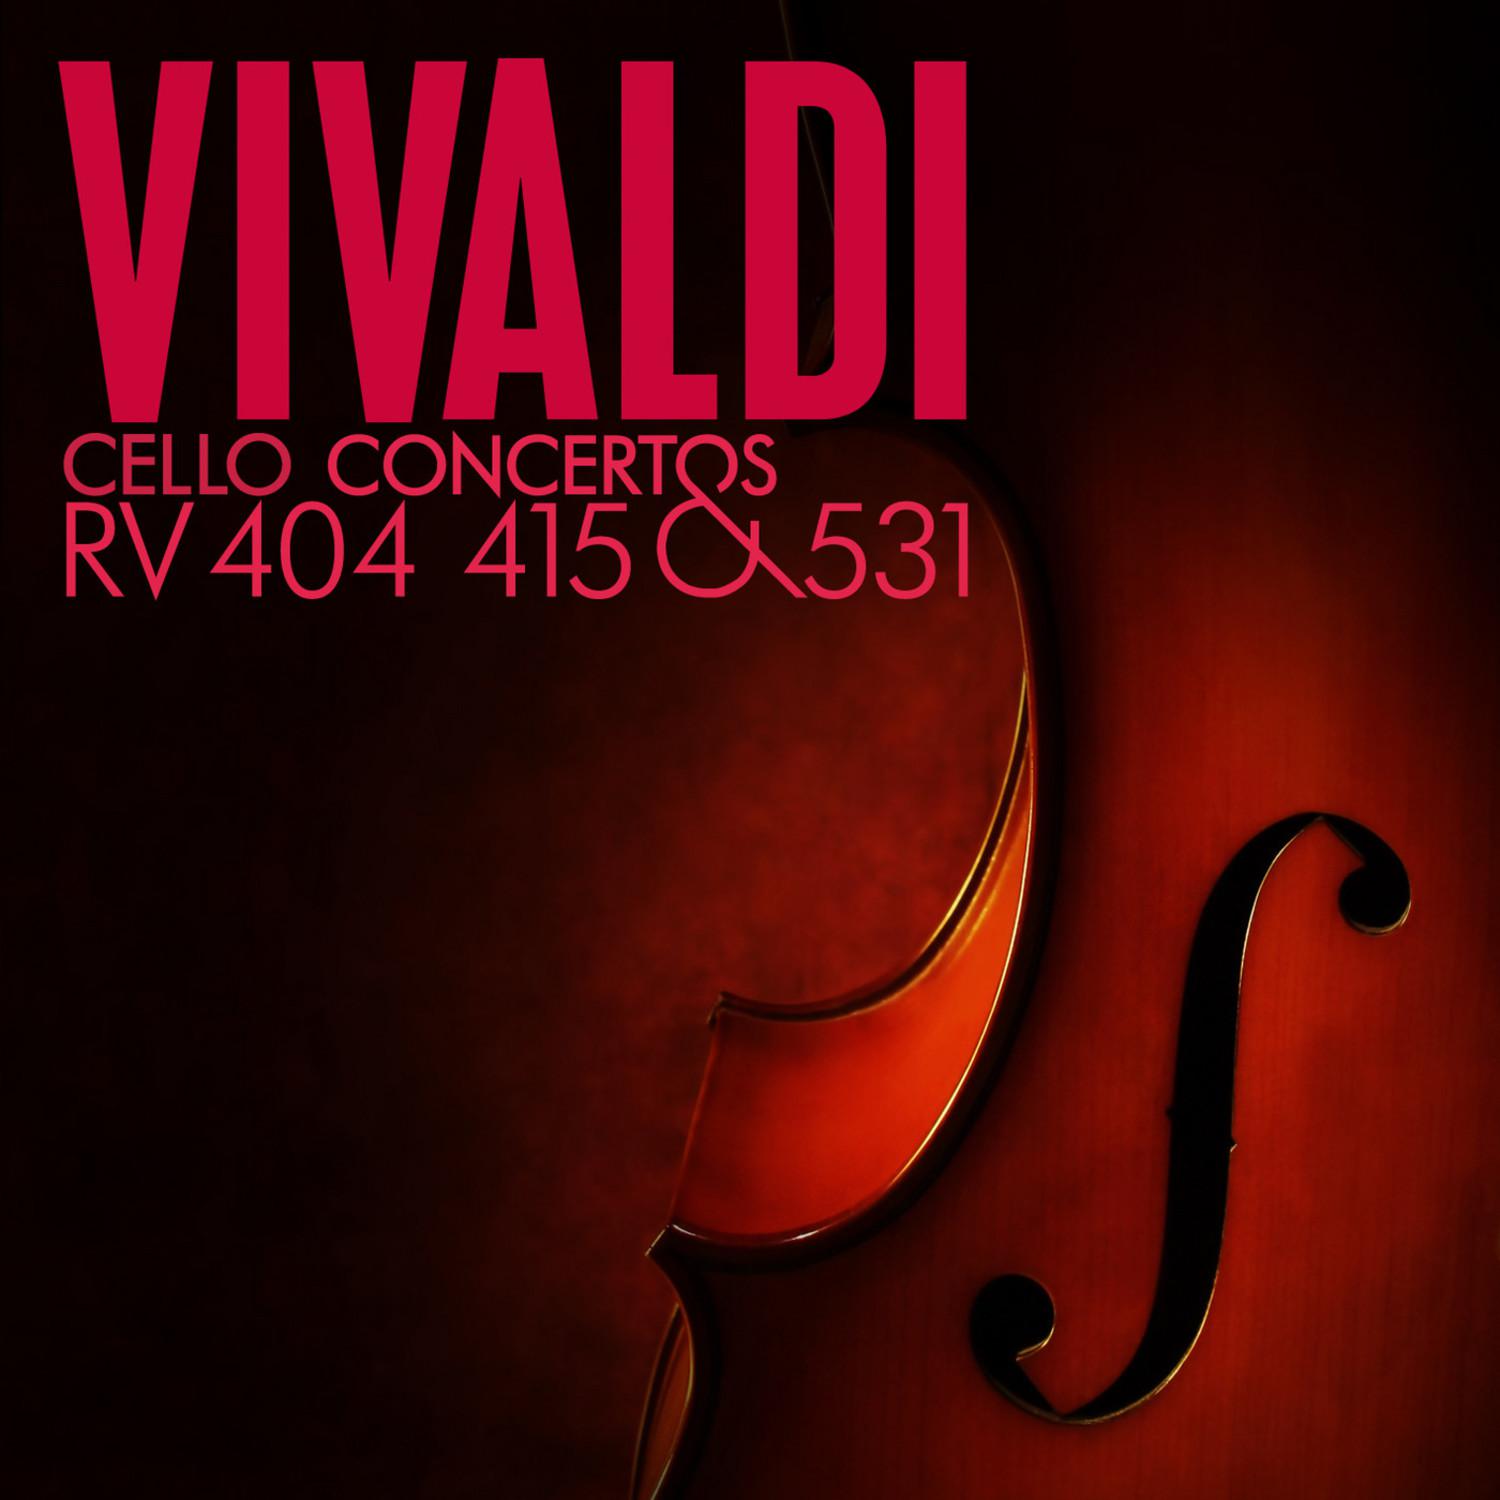 Vivaldi: Cello Concertos, RV 404, 415 and 531